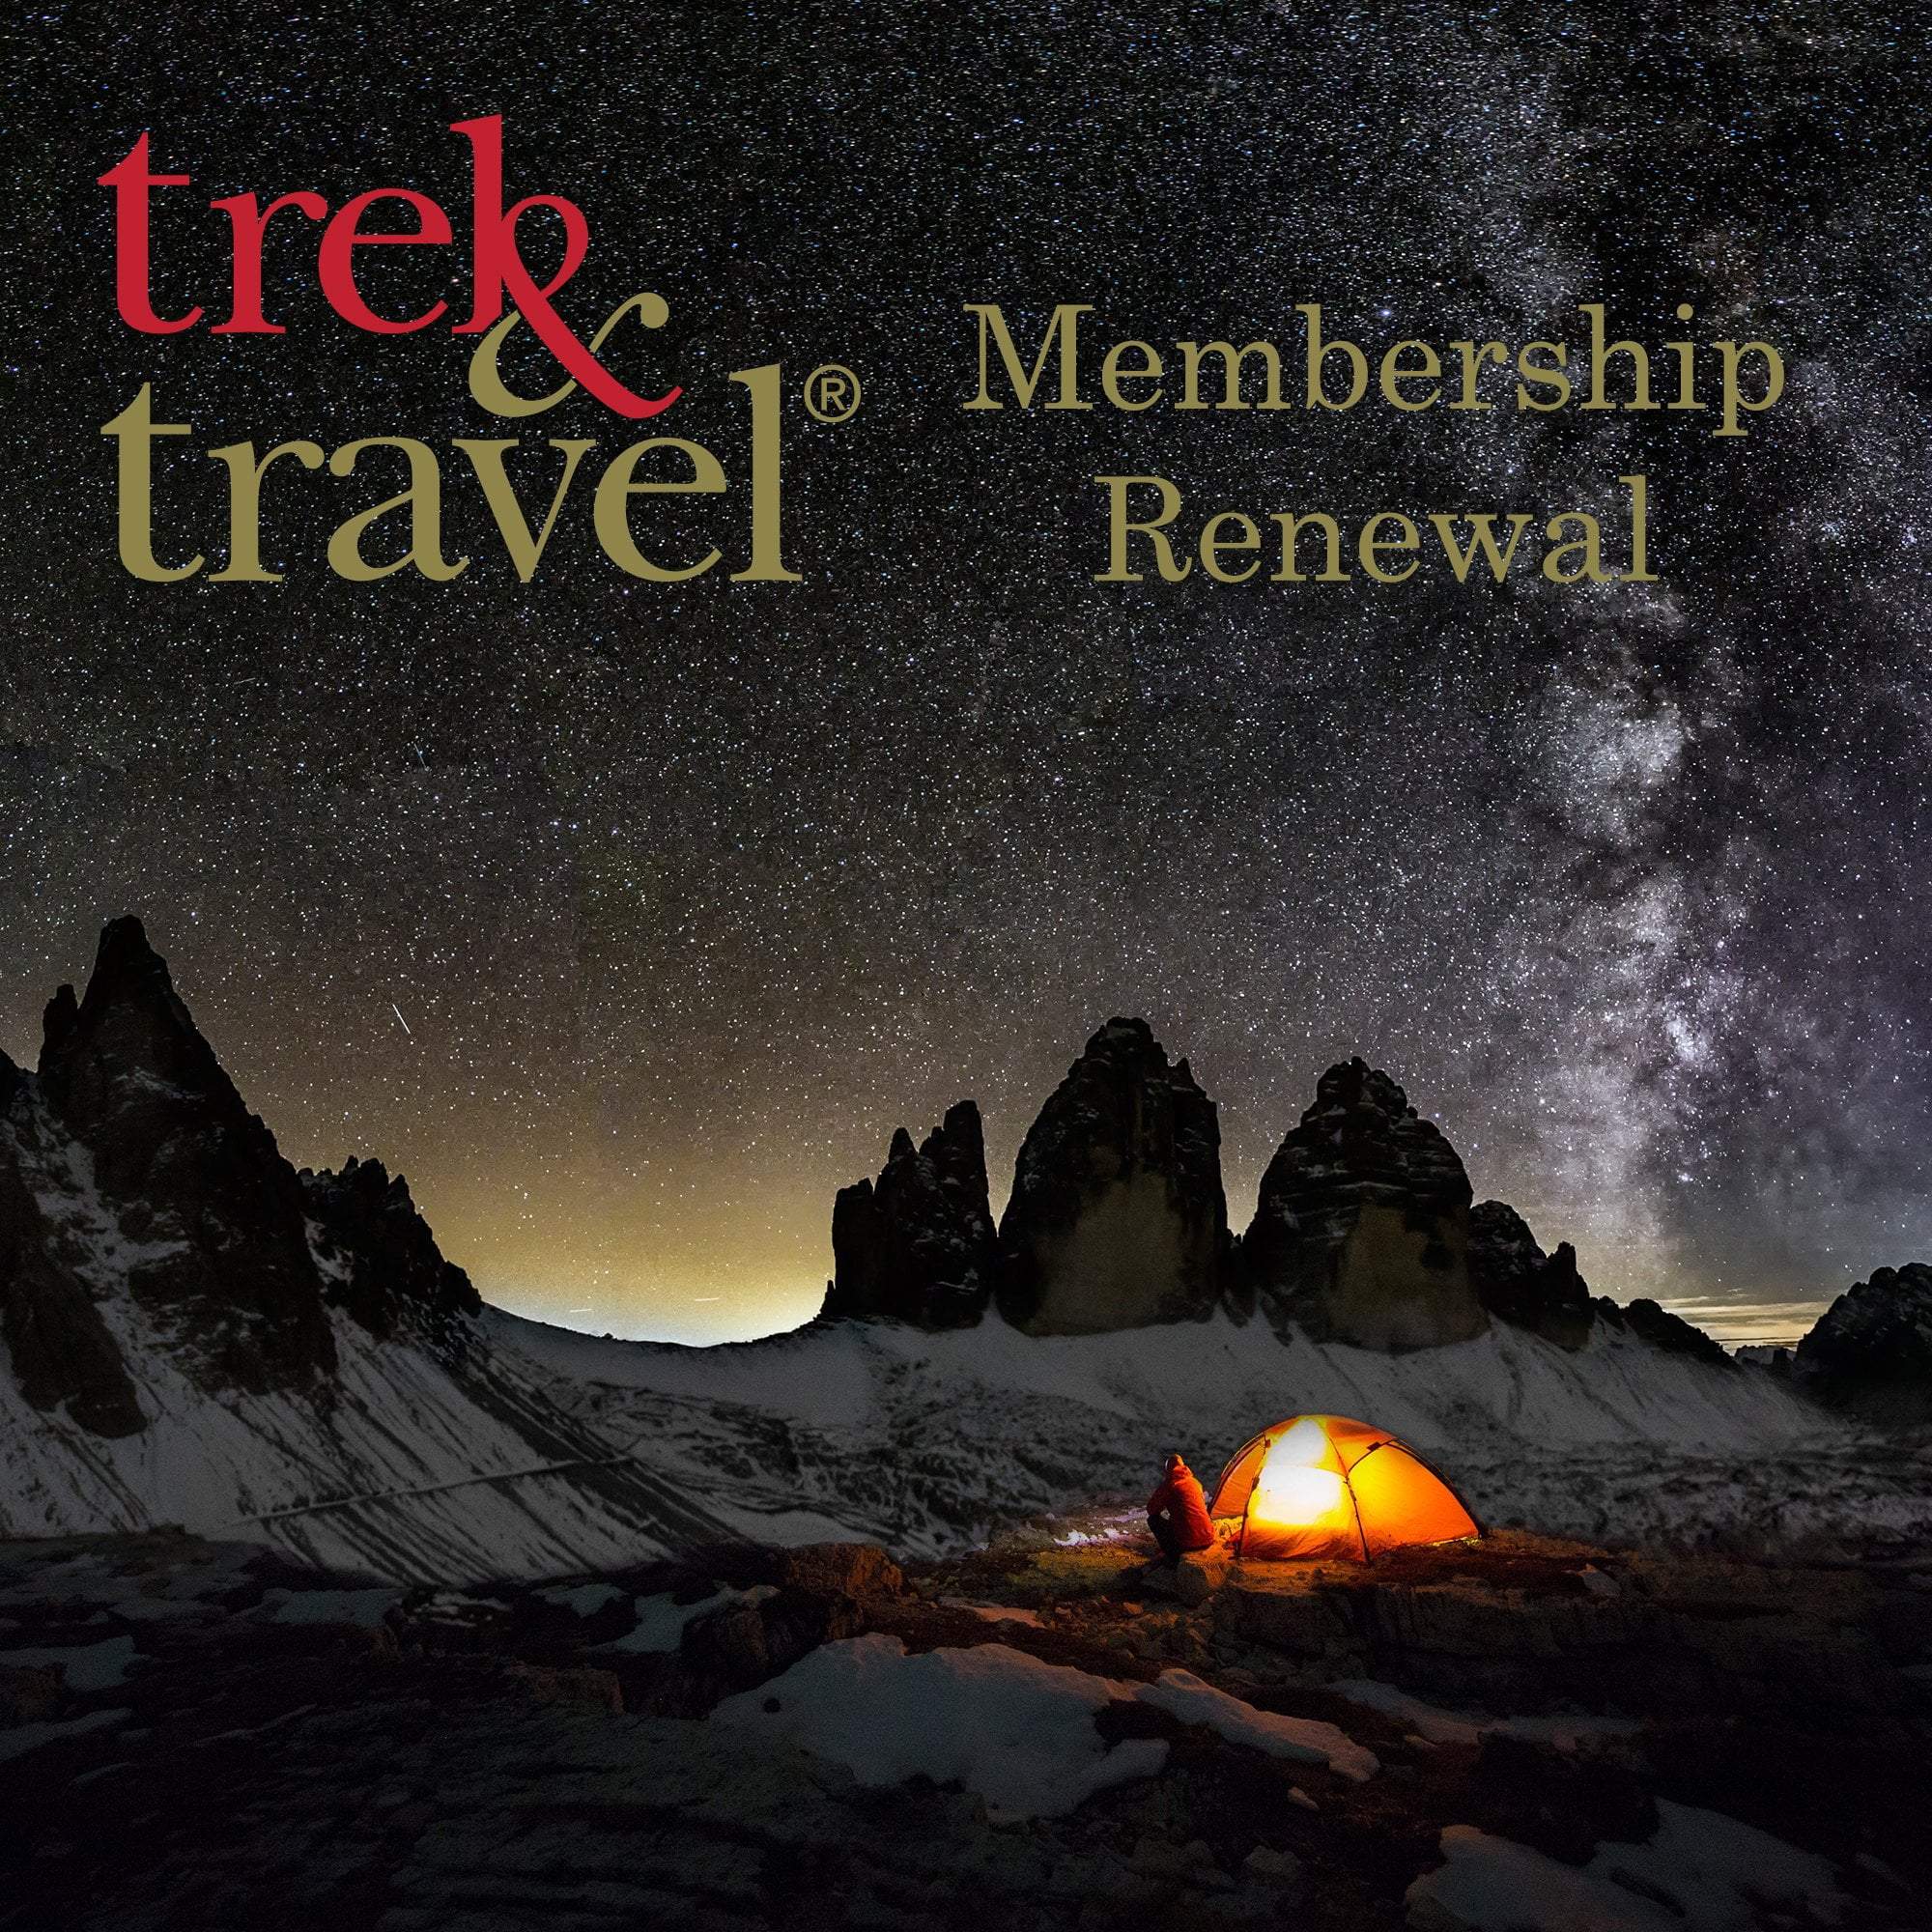 Trek & Travel Membership Renewal